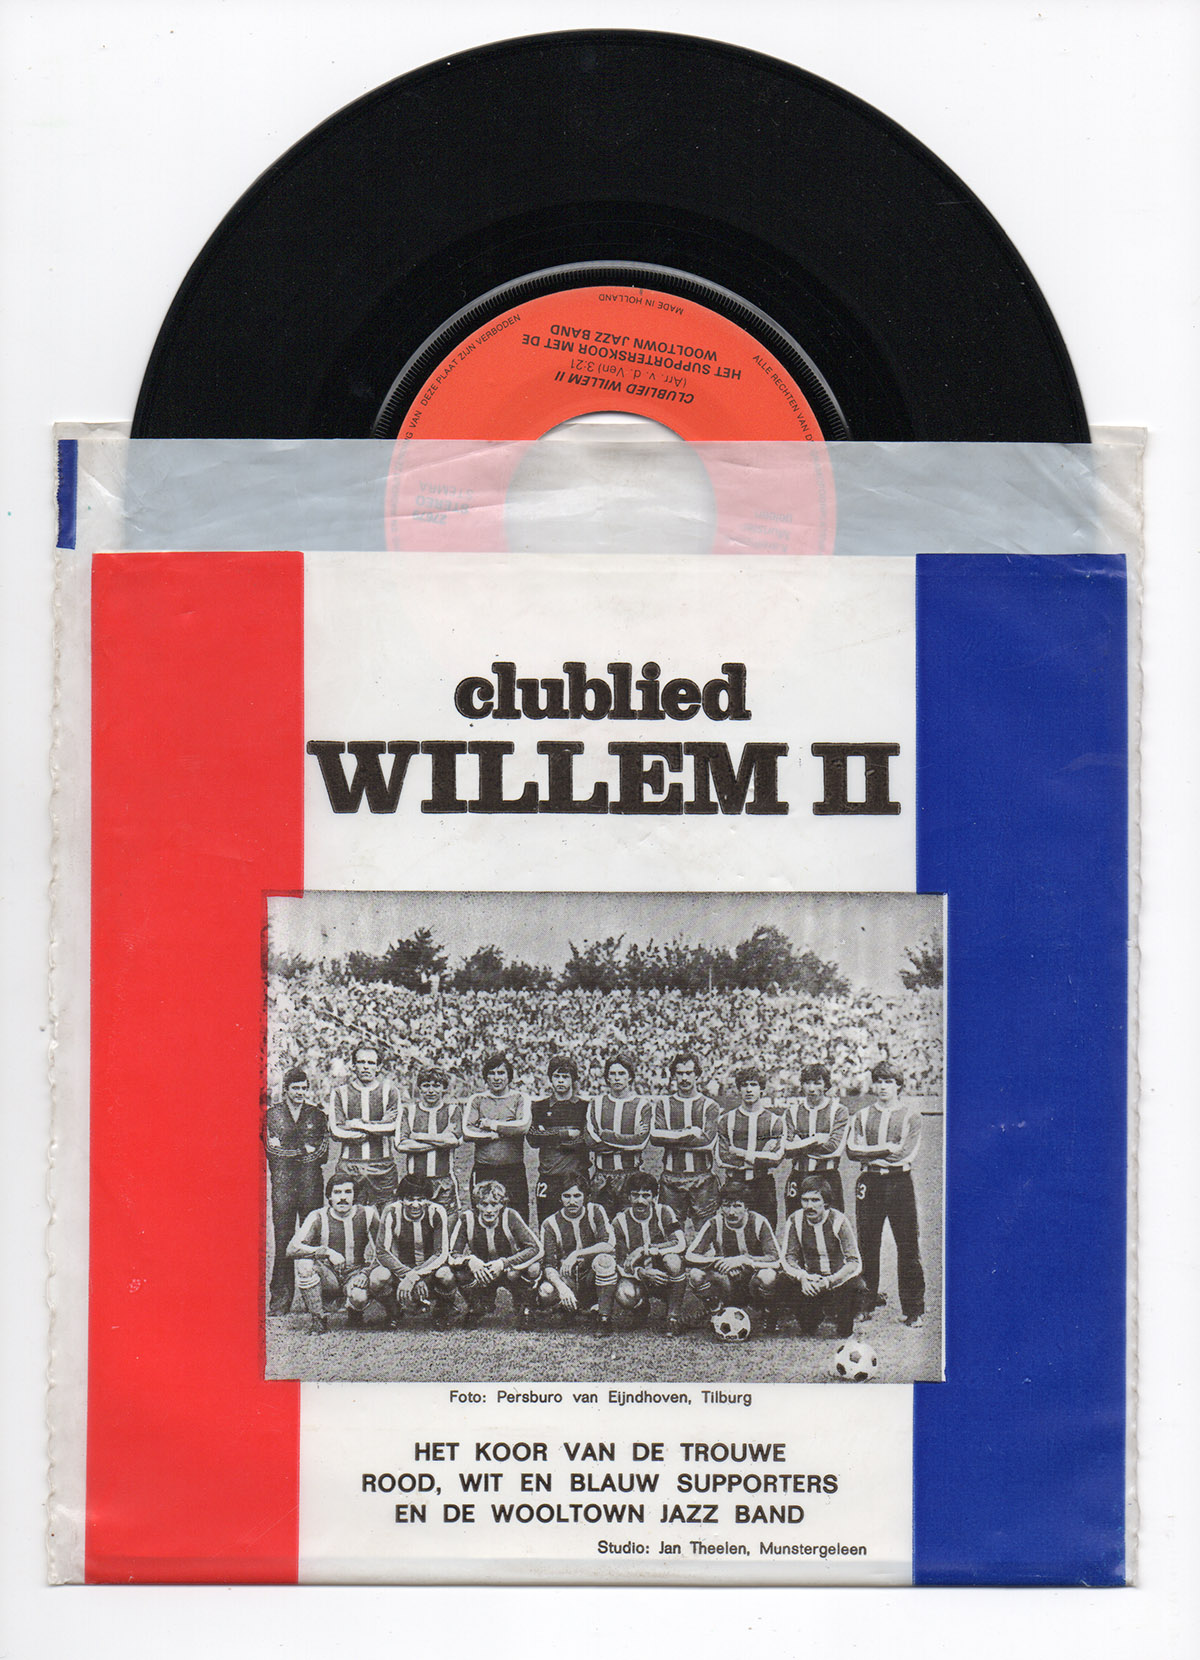 Willem II clublied